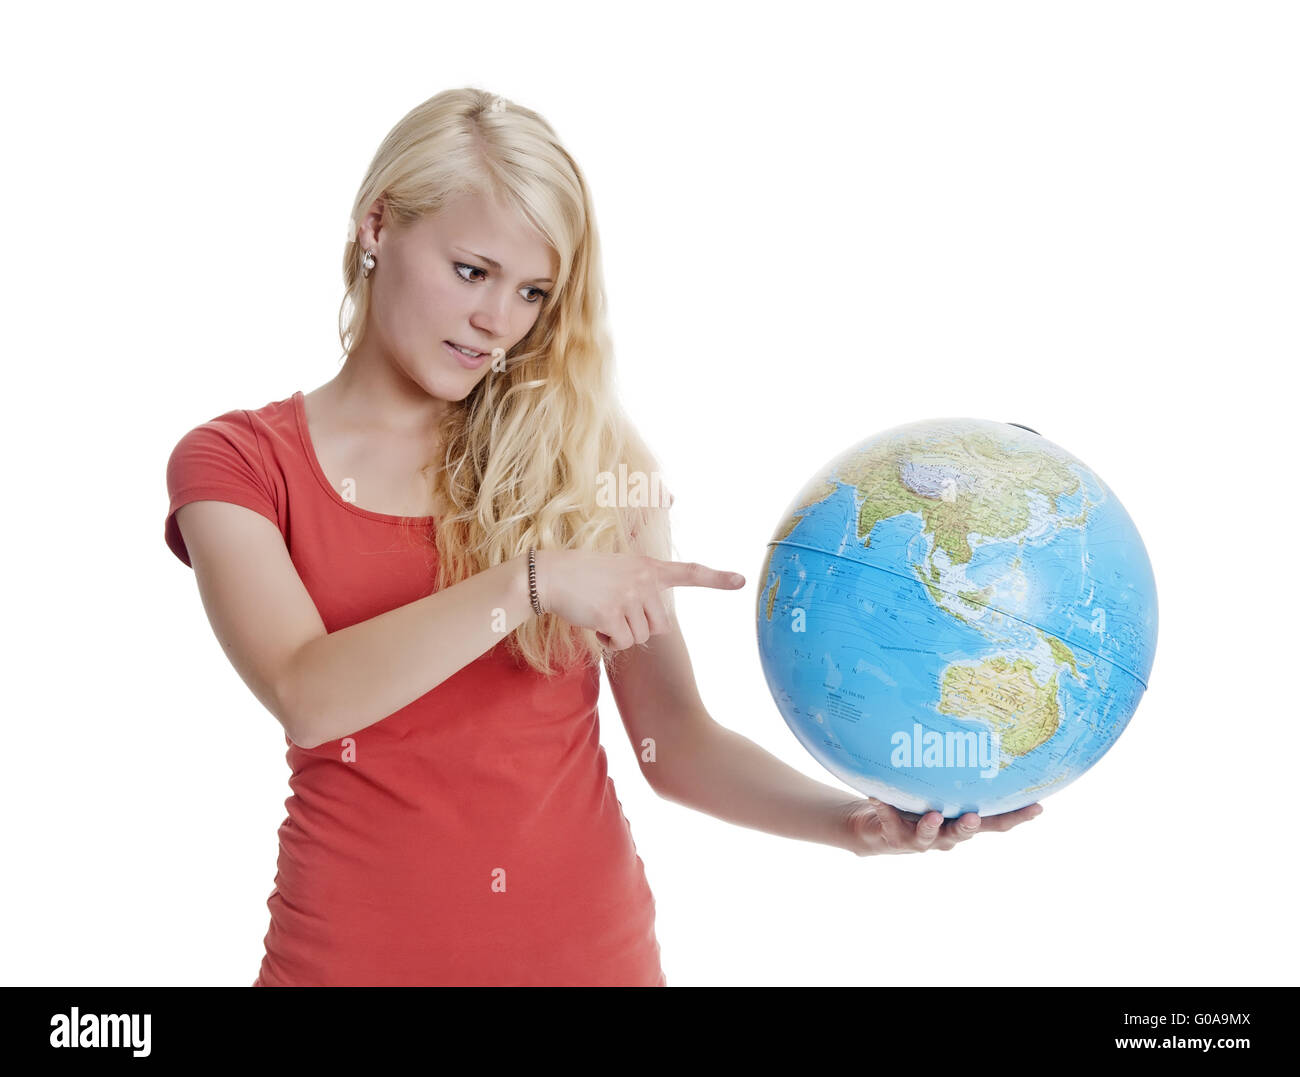 woman showing globe Stock Photo